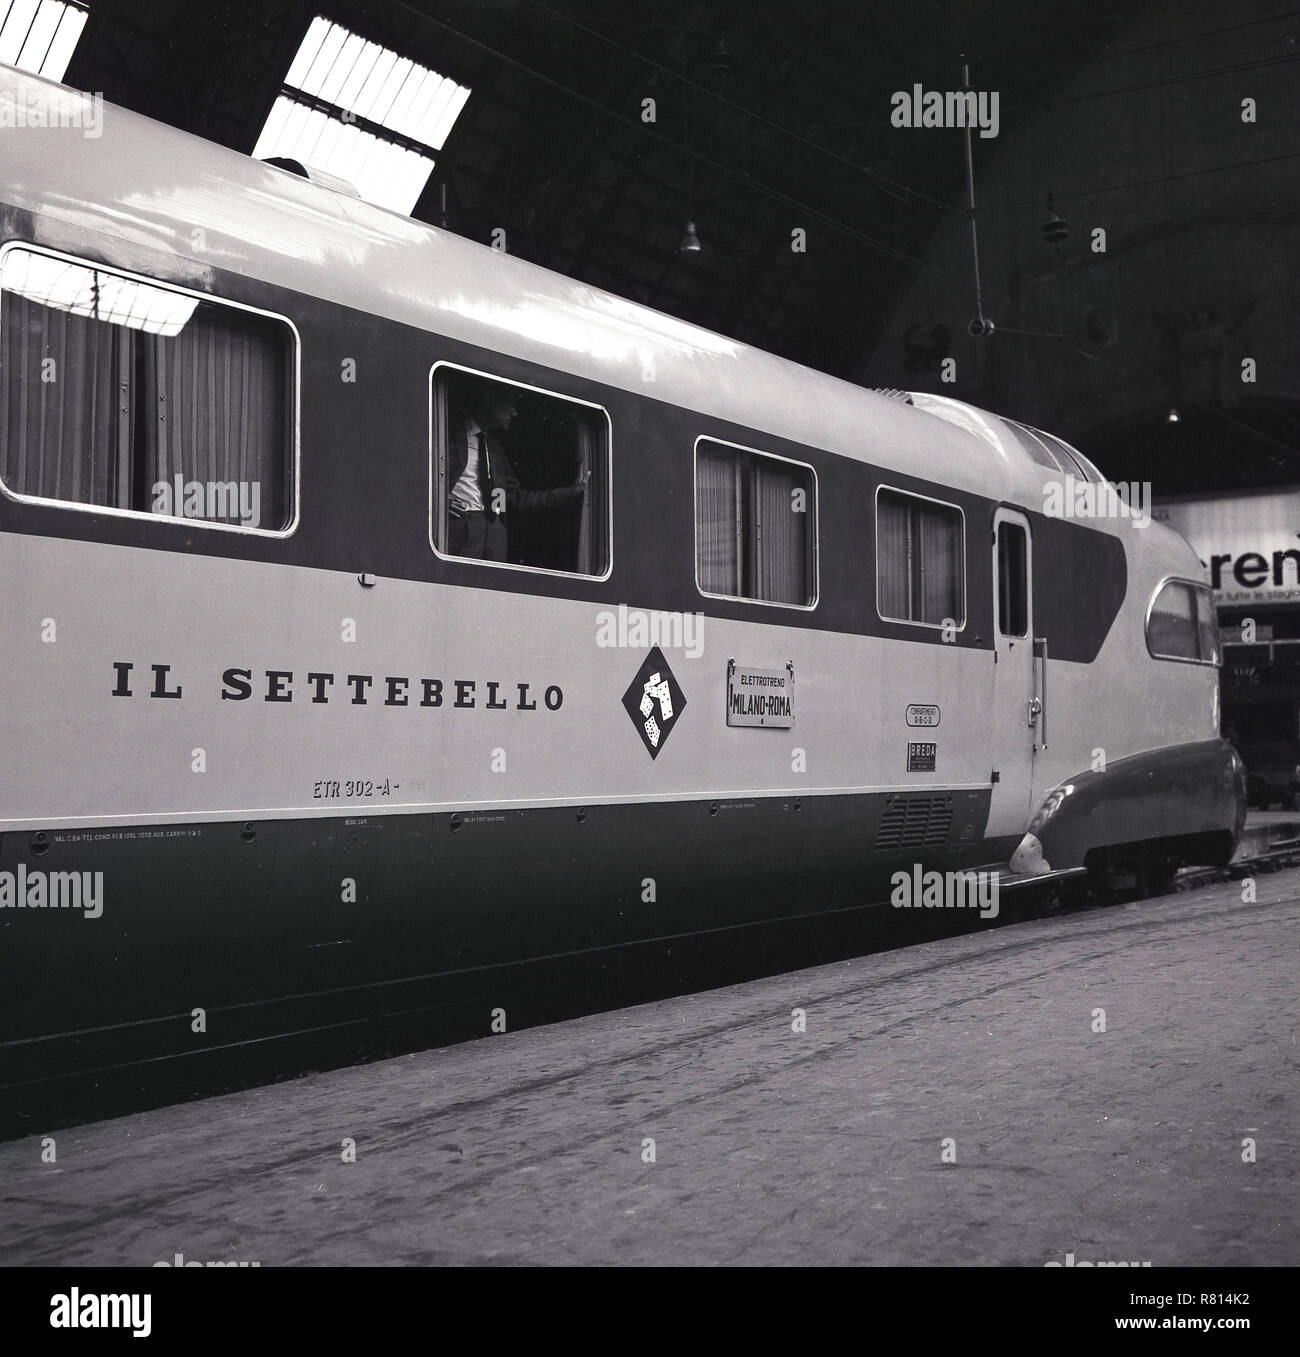 1960, storico, il caratteristico treno italiano, l'Settebello', su una  piattaforma ferroviaria a Milano stazione centrale. Introdotto nel 1953,  questo hotel di lusso ad alta velocità treno express coperto la rotta  Milano-Roma e